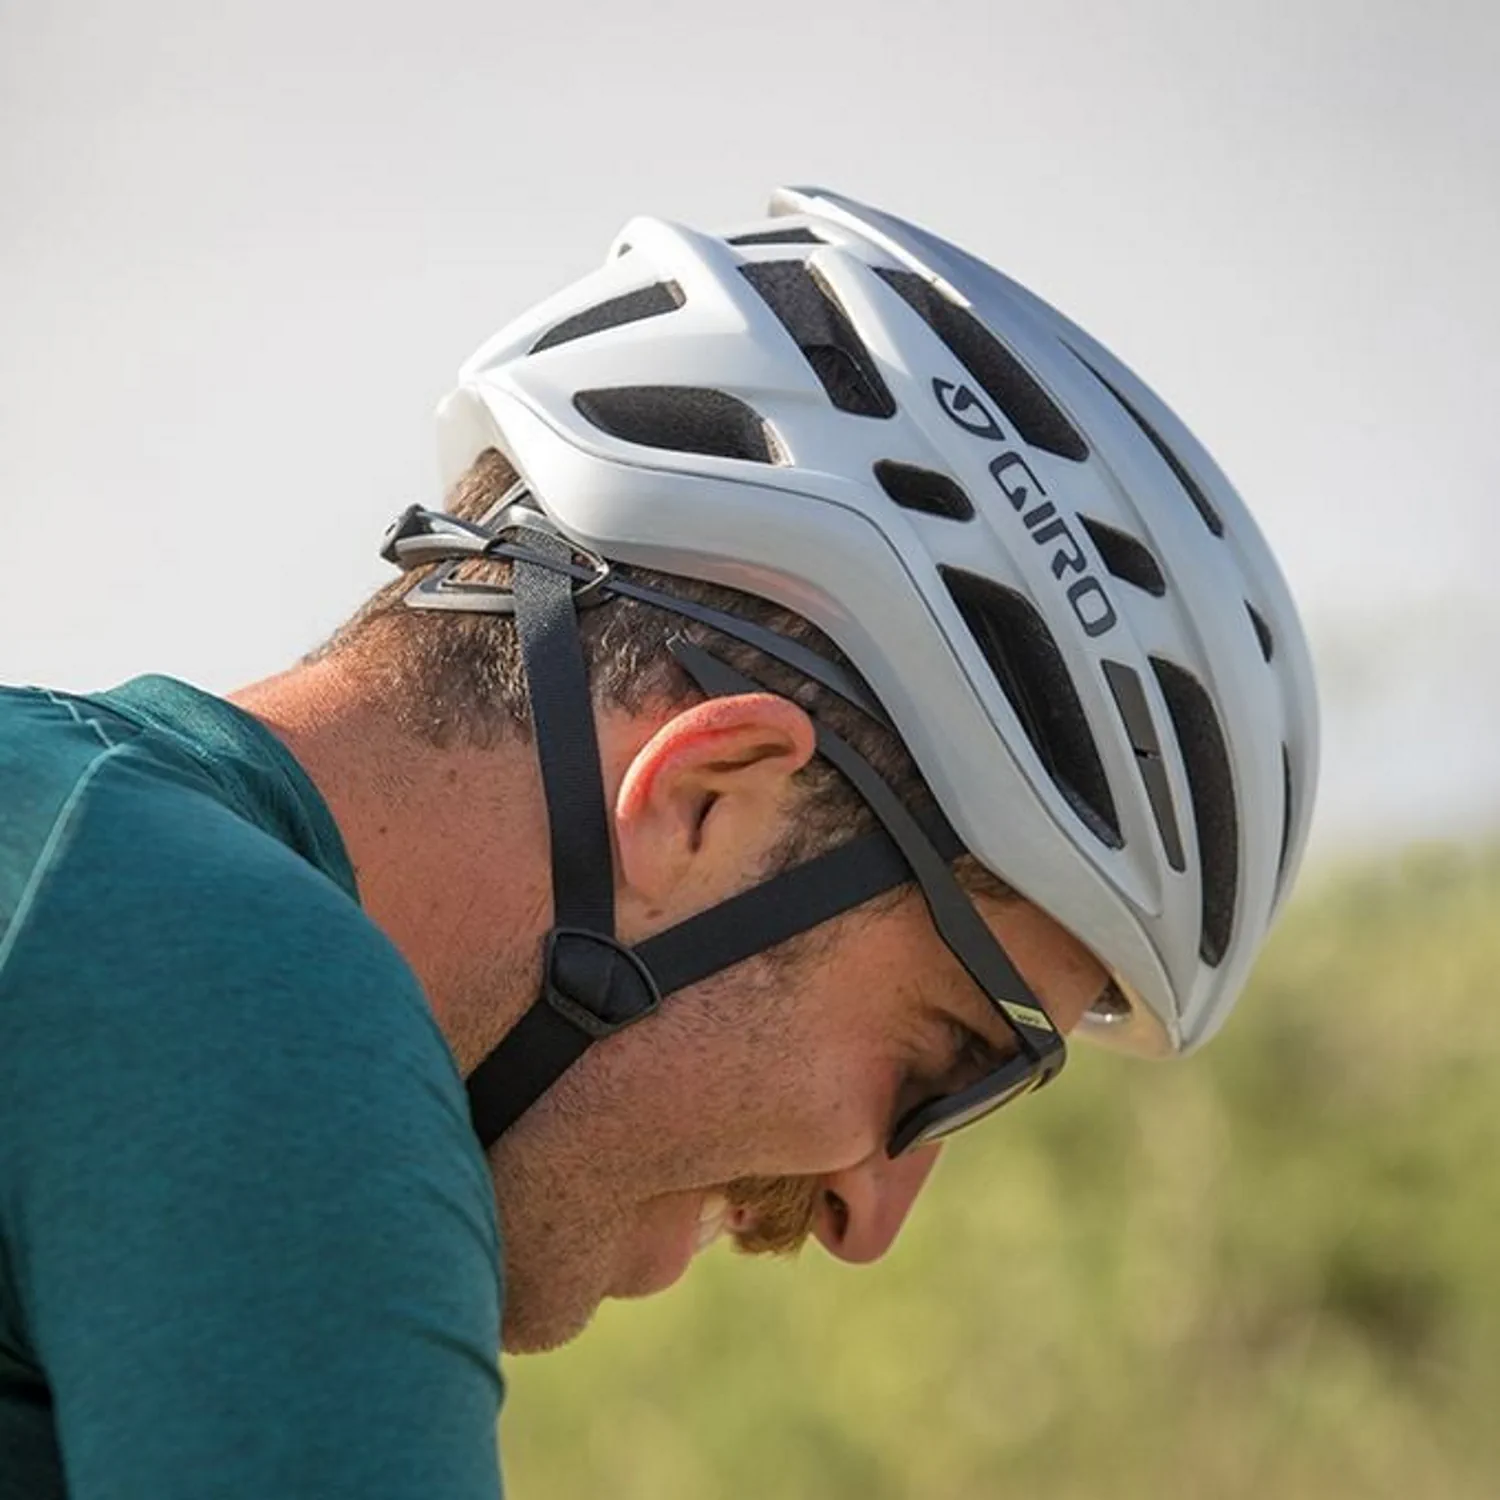 Biały kask rowerowy Giro, widok z boku na głowe mężczyzny